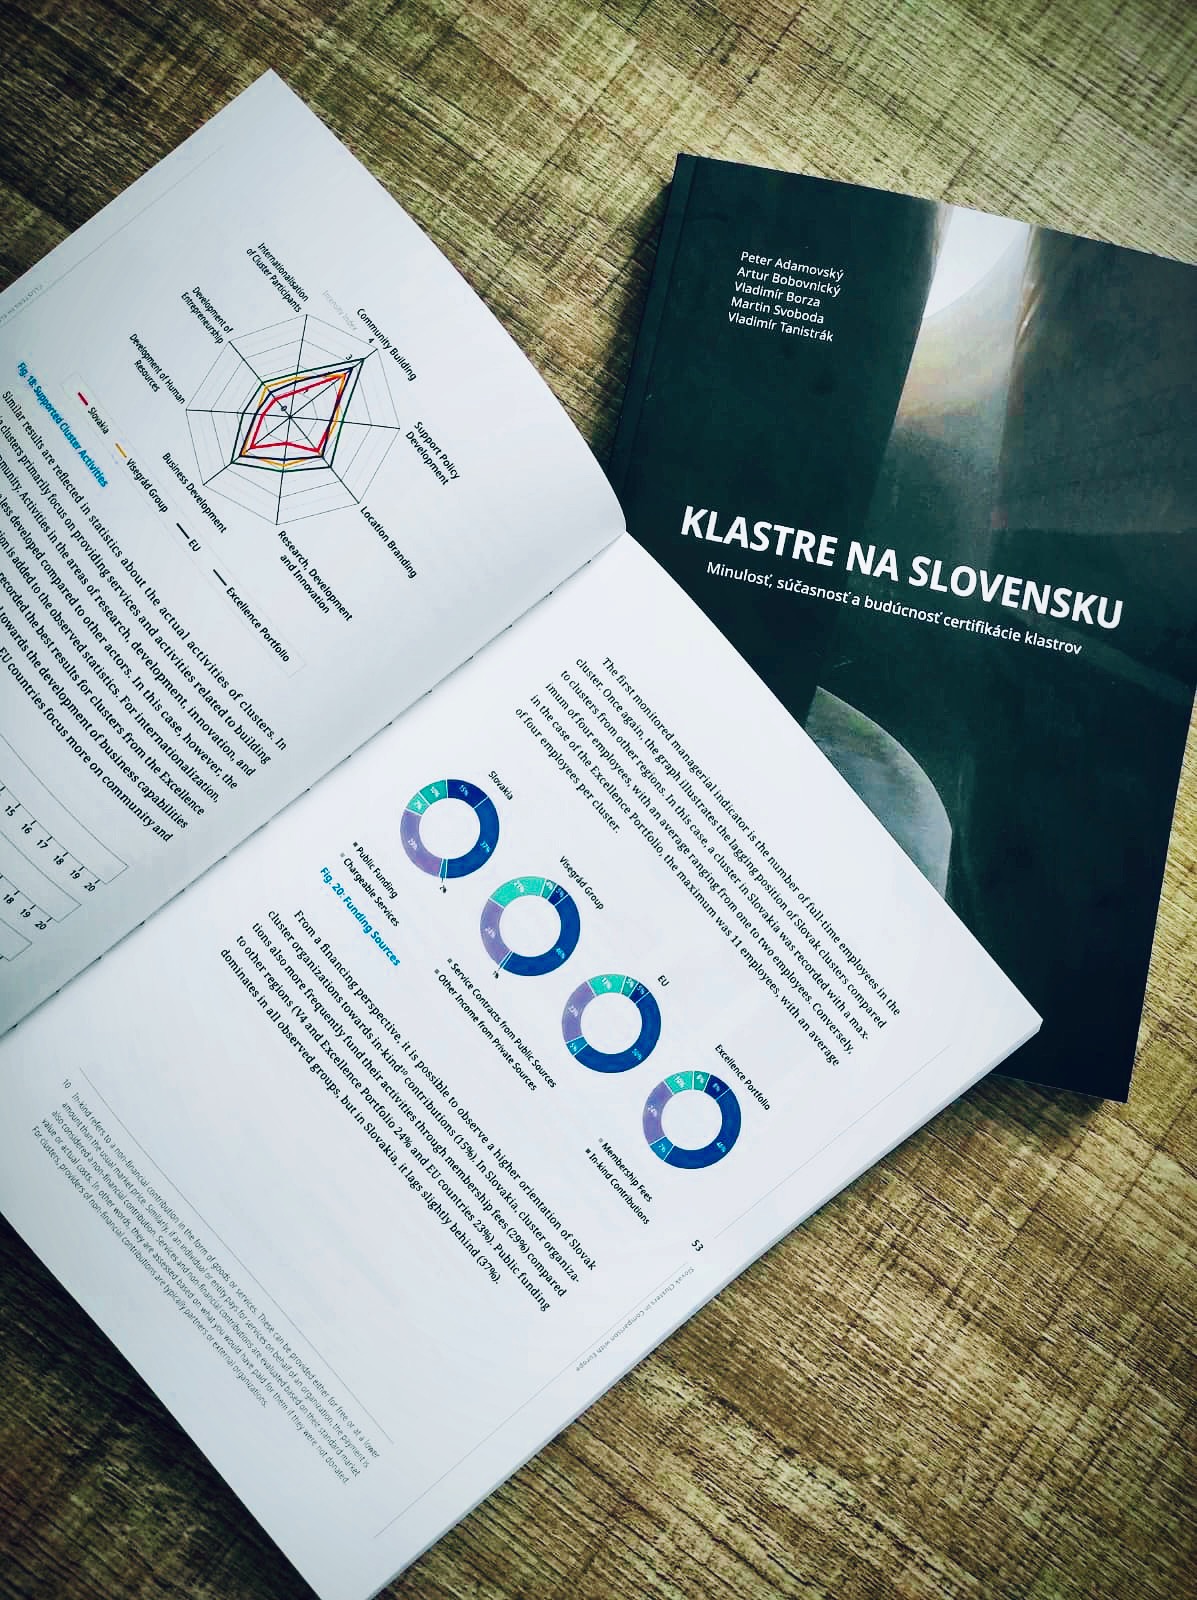 KLASTRE NA SLOVENSKU: Minulosť, súčasnosť a budúcnosť certifikácie klastrov